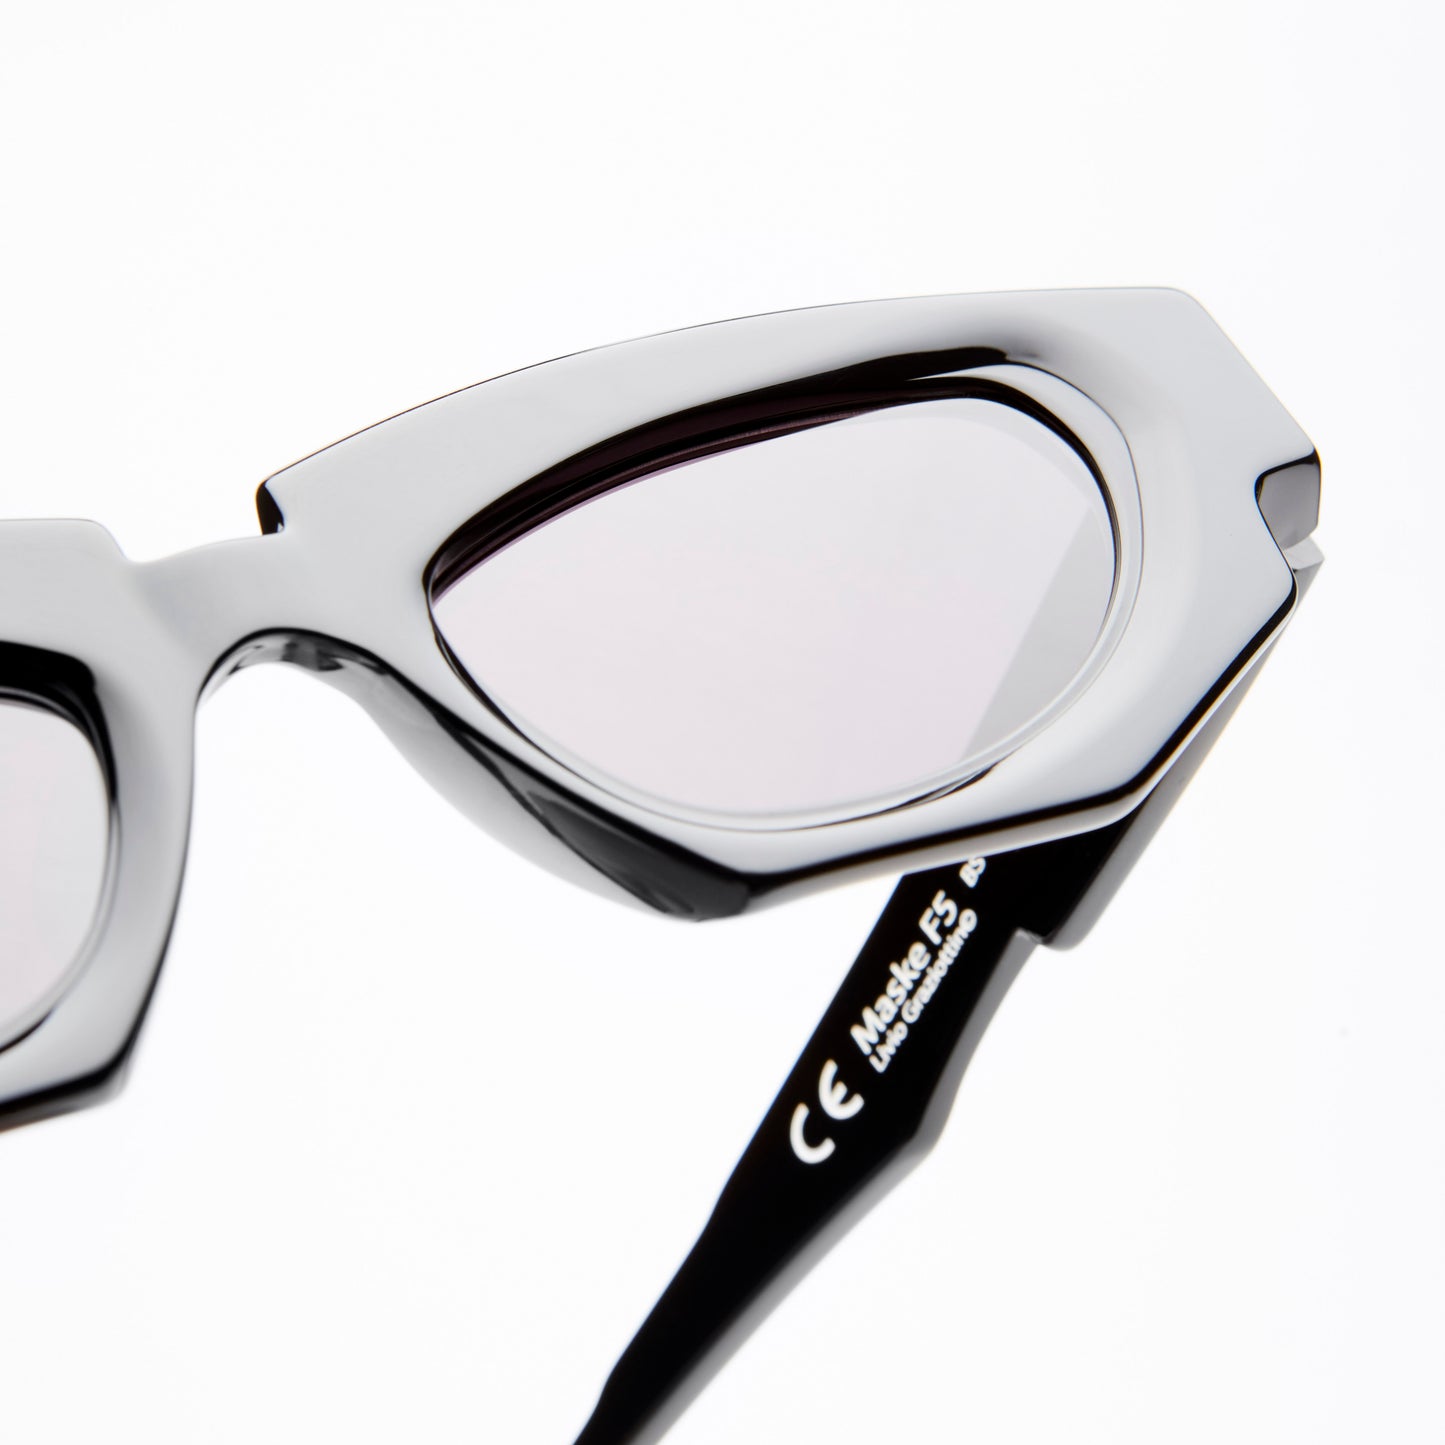 Kuboraum Maske F5 - Sunglasses